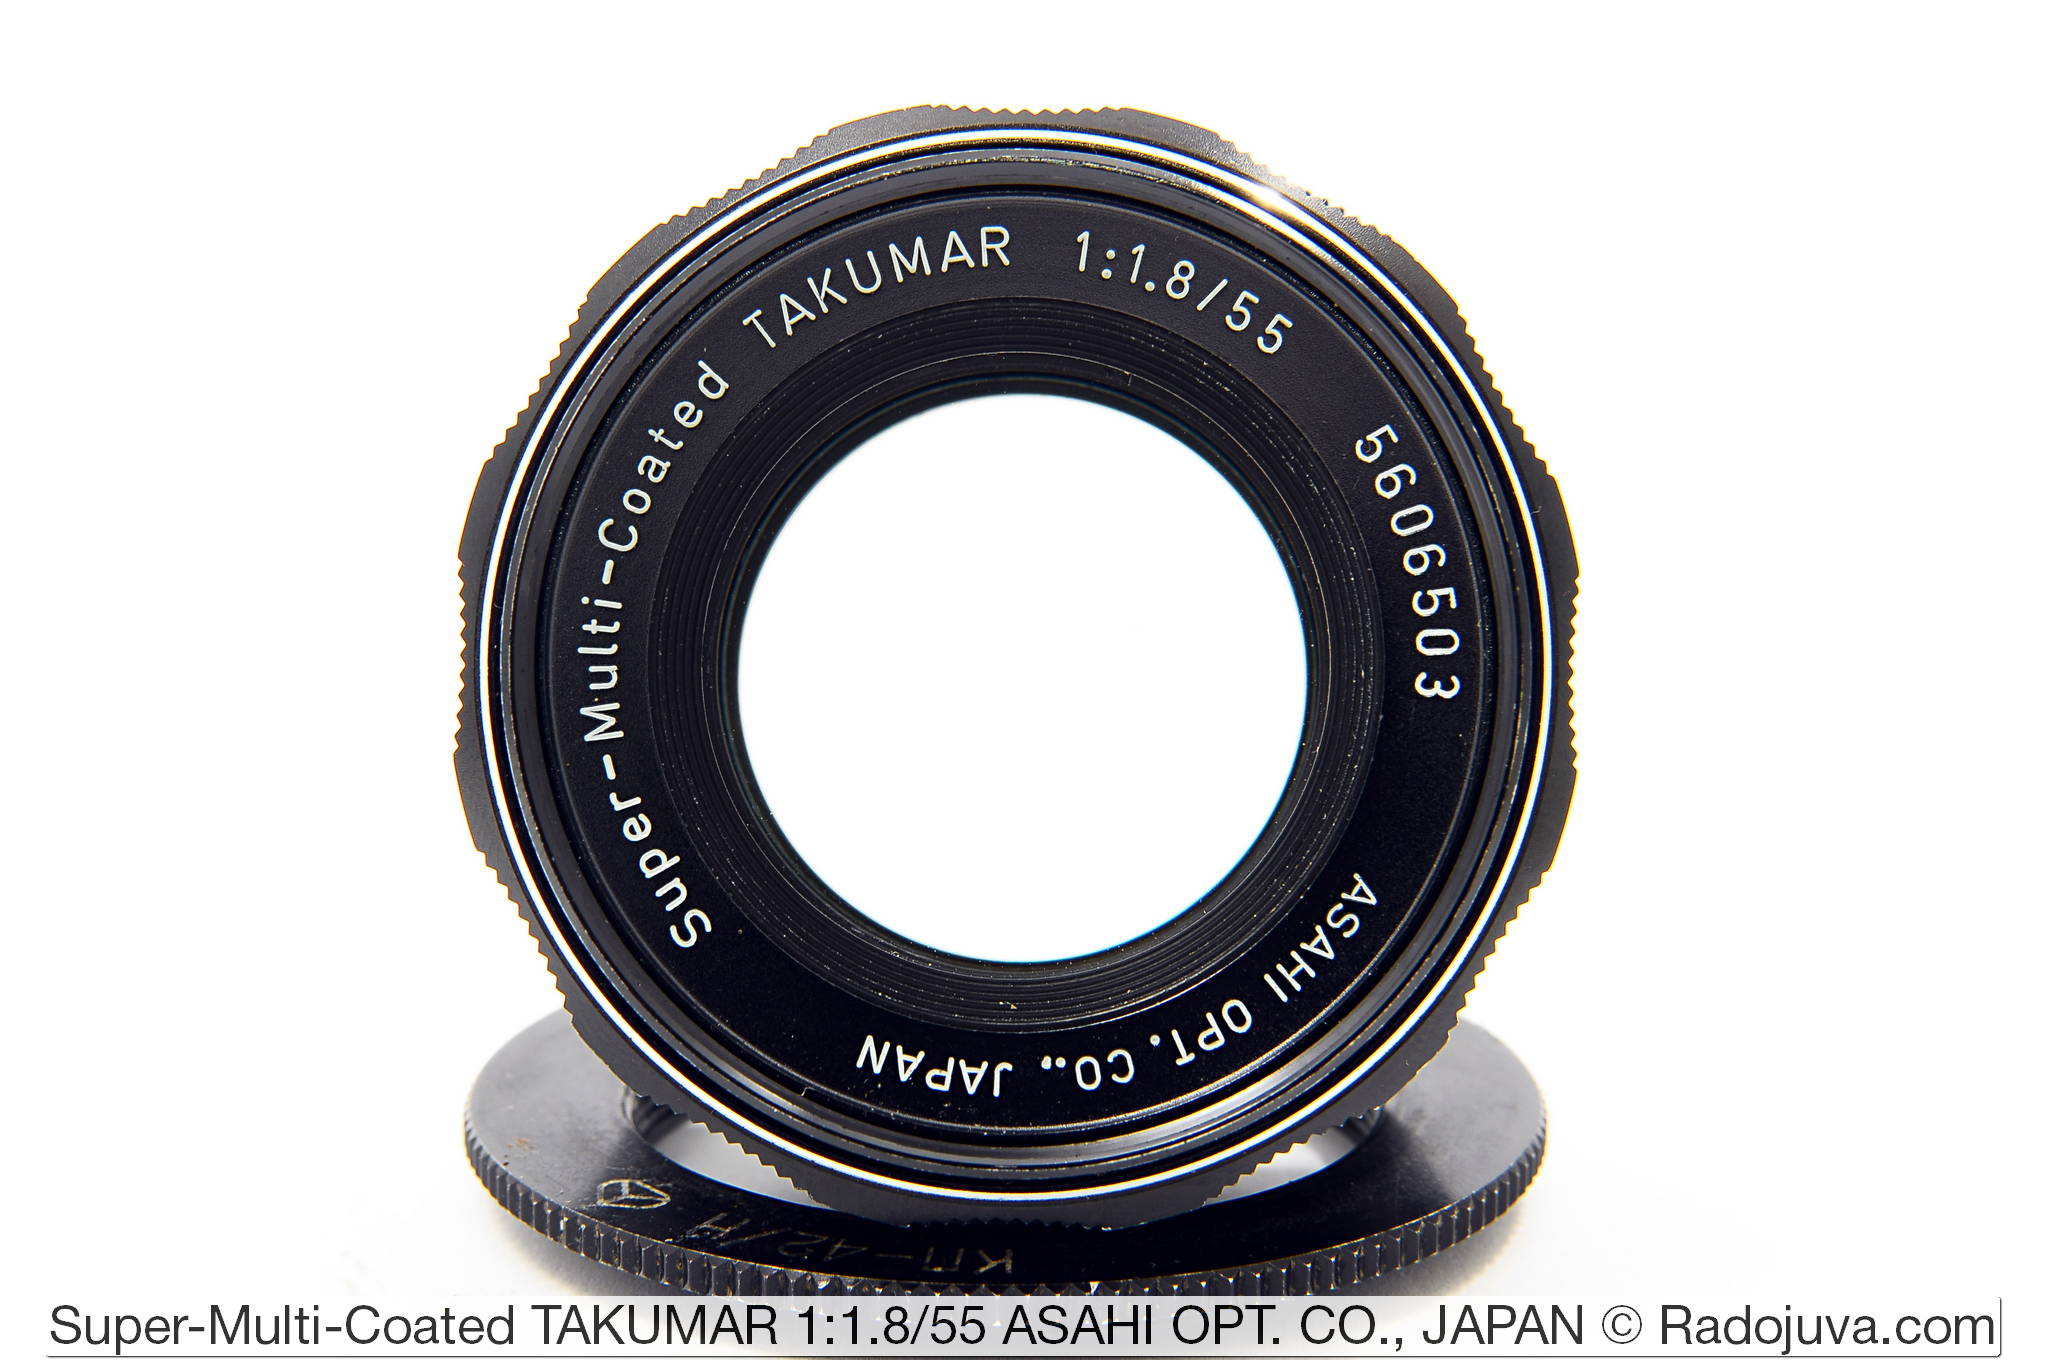 Super-Multi-Coated TAKUMAR 1: 1.8 / 55 ASAHI OPT. CO., JAPAN